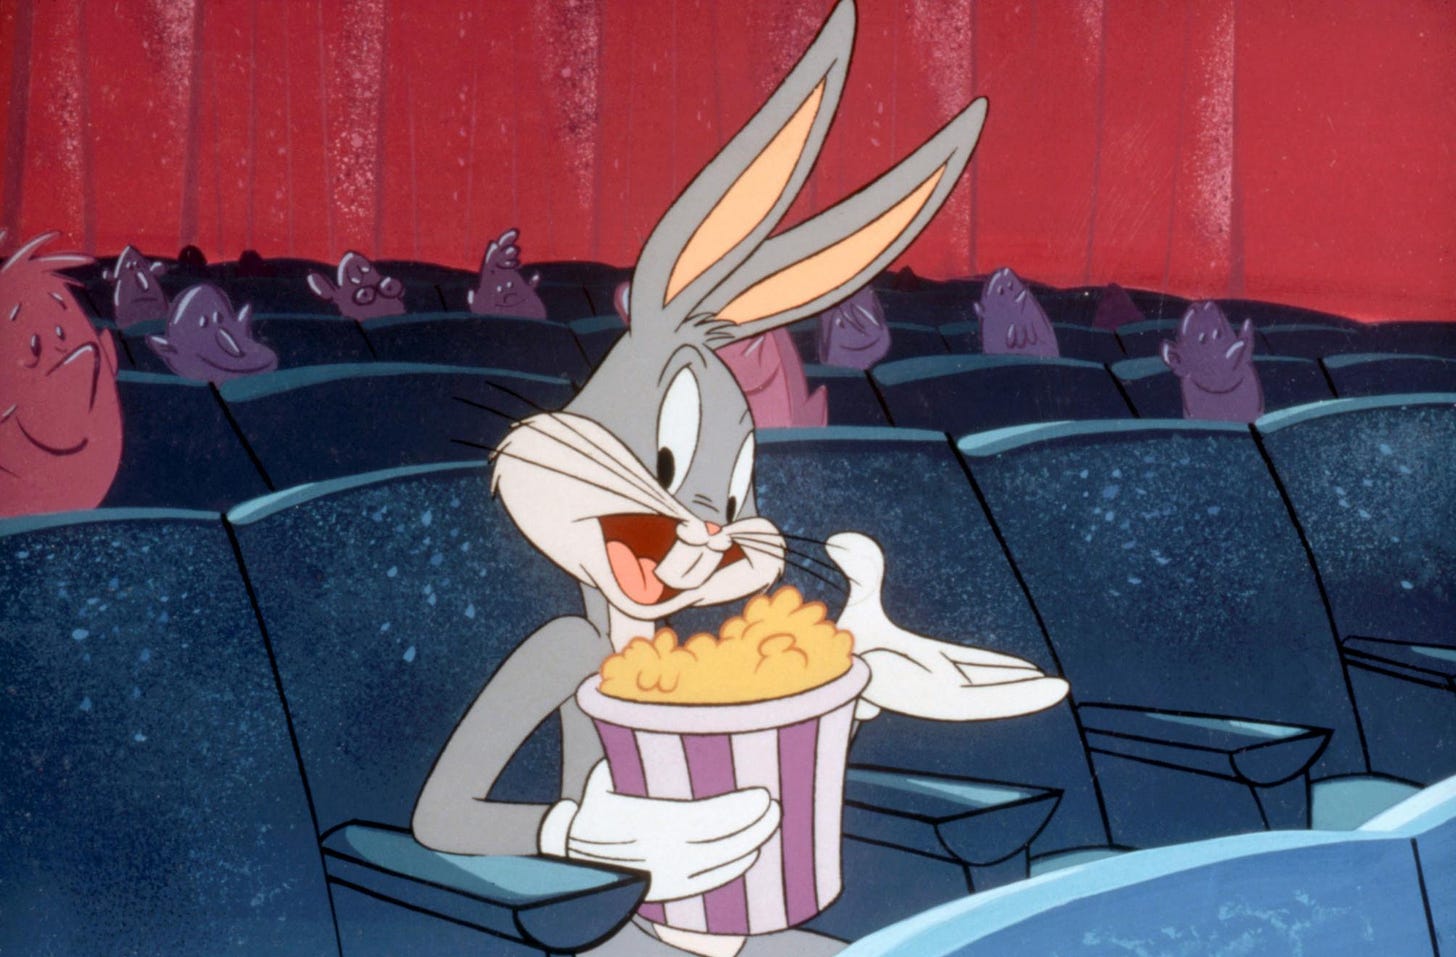 Poltrone blu del cinema con Bugs Bunny che tiene in mano un sacchetto di pop corn e ci guarda sorridendo e allargando l'altra mano. Dietro di lui spuntano qua e là delle teste rosa e viola di spettatori che guardano lo schermo. Fondale rosso.